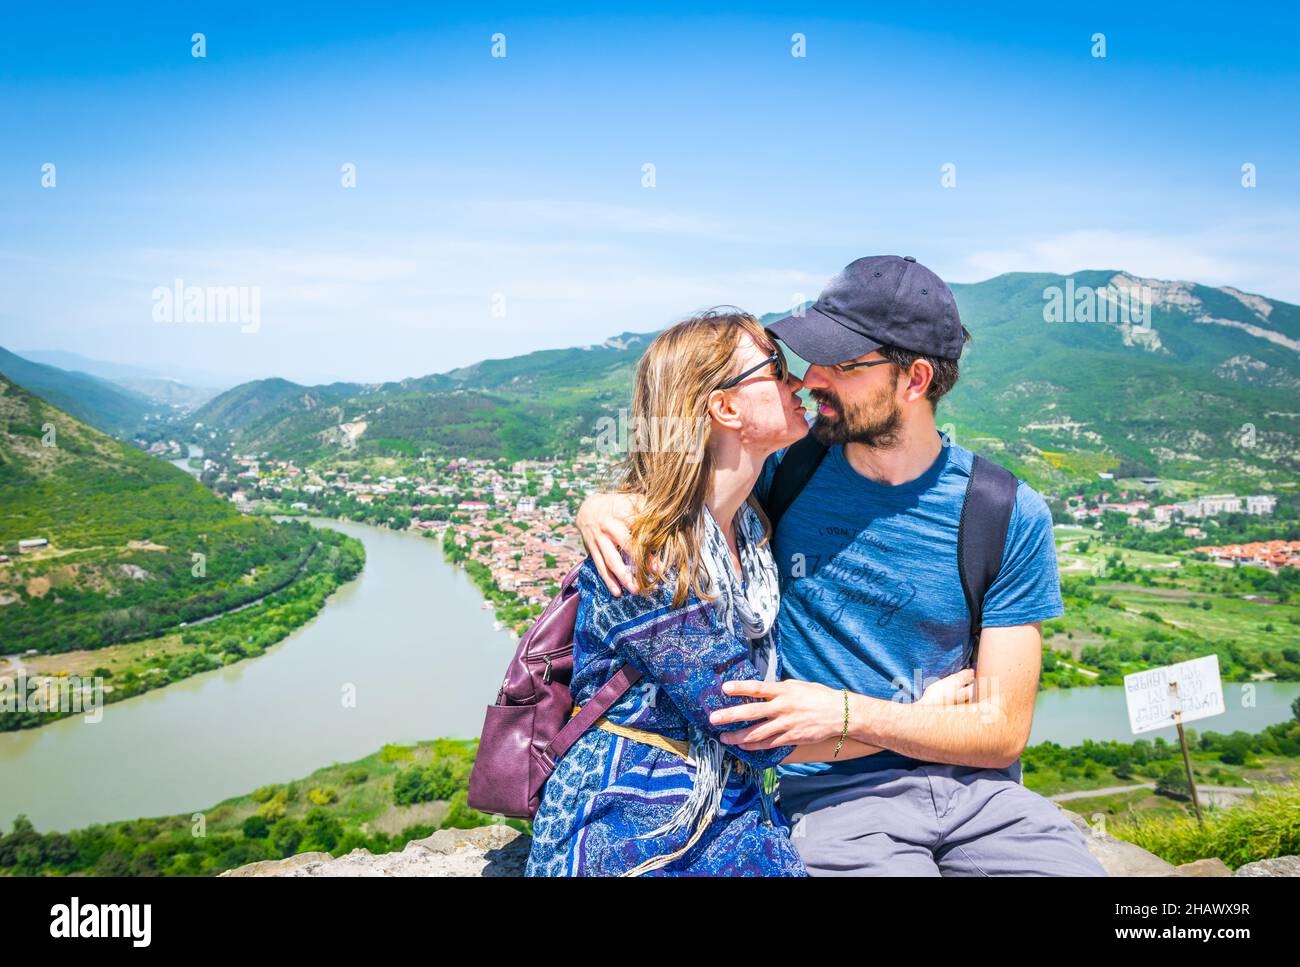 Le couple s'assoit et s'embrasse avec une vue panoramique sur les montagnes et le fond de la ville de Mtskheta et pose pour une photo de voyage.Excursion à summ Banque D'Images